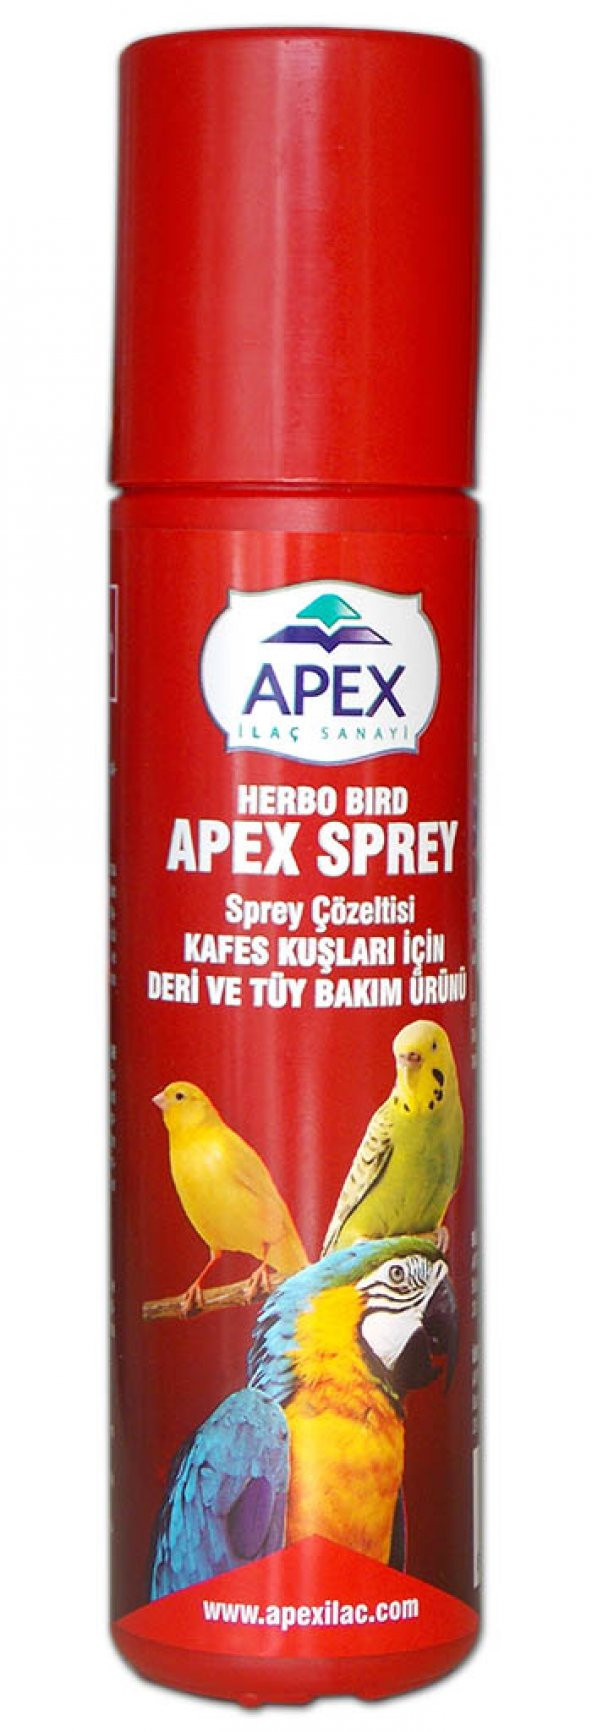 Dahayokmu Kuşlar İçin Deri Ve Tüy Bakımı - Apex